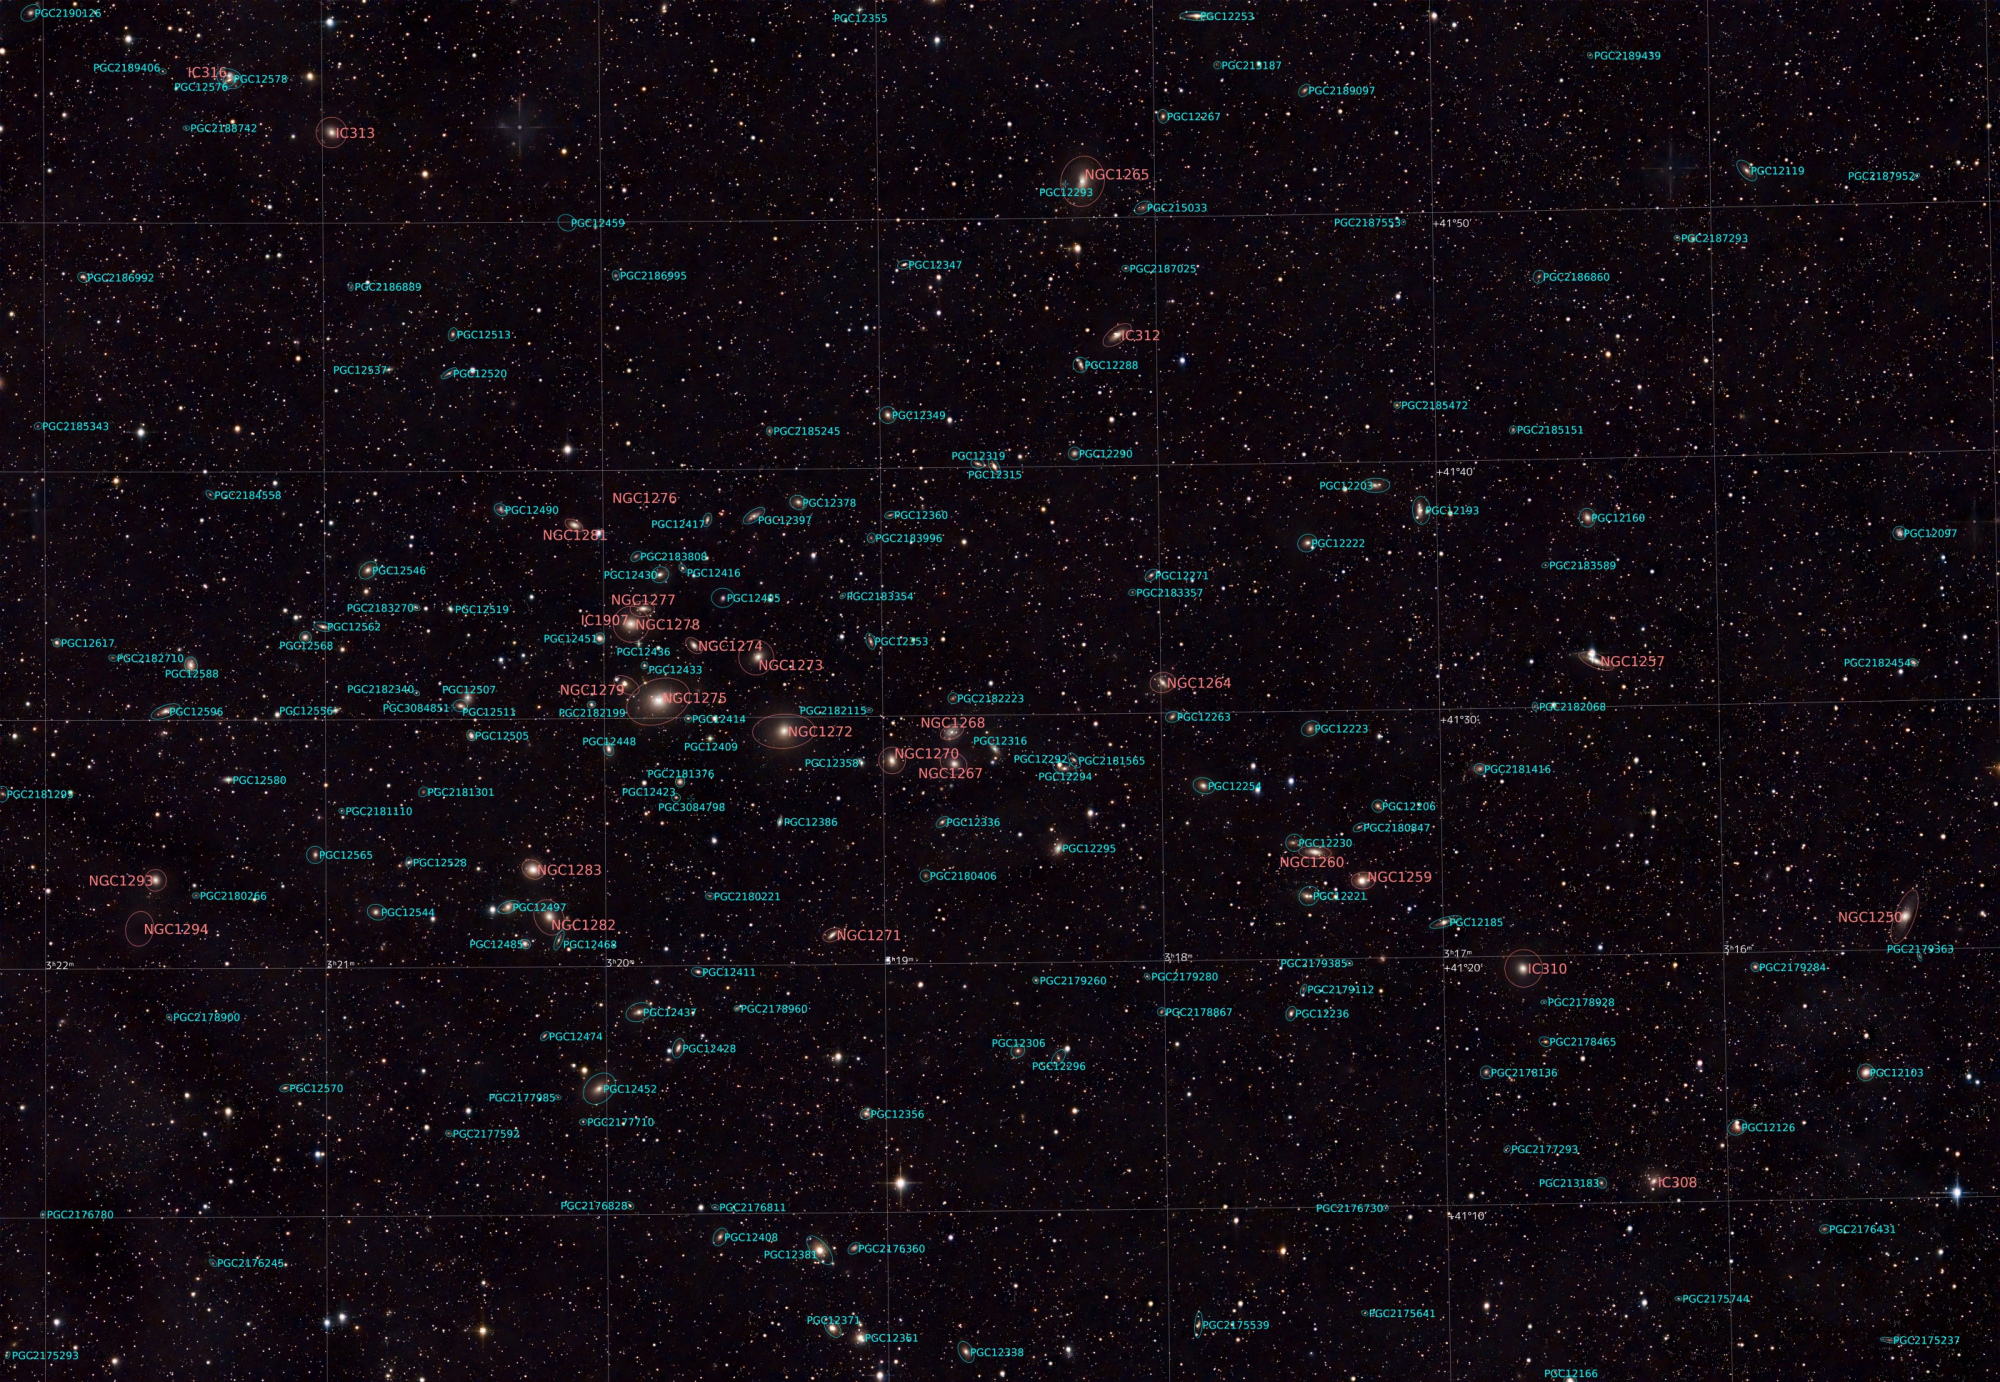 65a26818625cc_NGC1275_FinPix_Forum_Annotated_PGC.thumb.jpg.1bf219f7e8db8296db3334eb8d1d1dbe.jpg